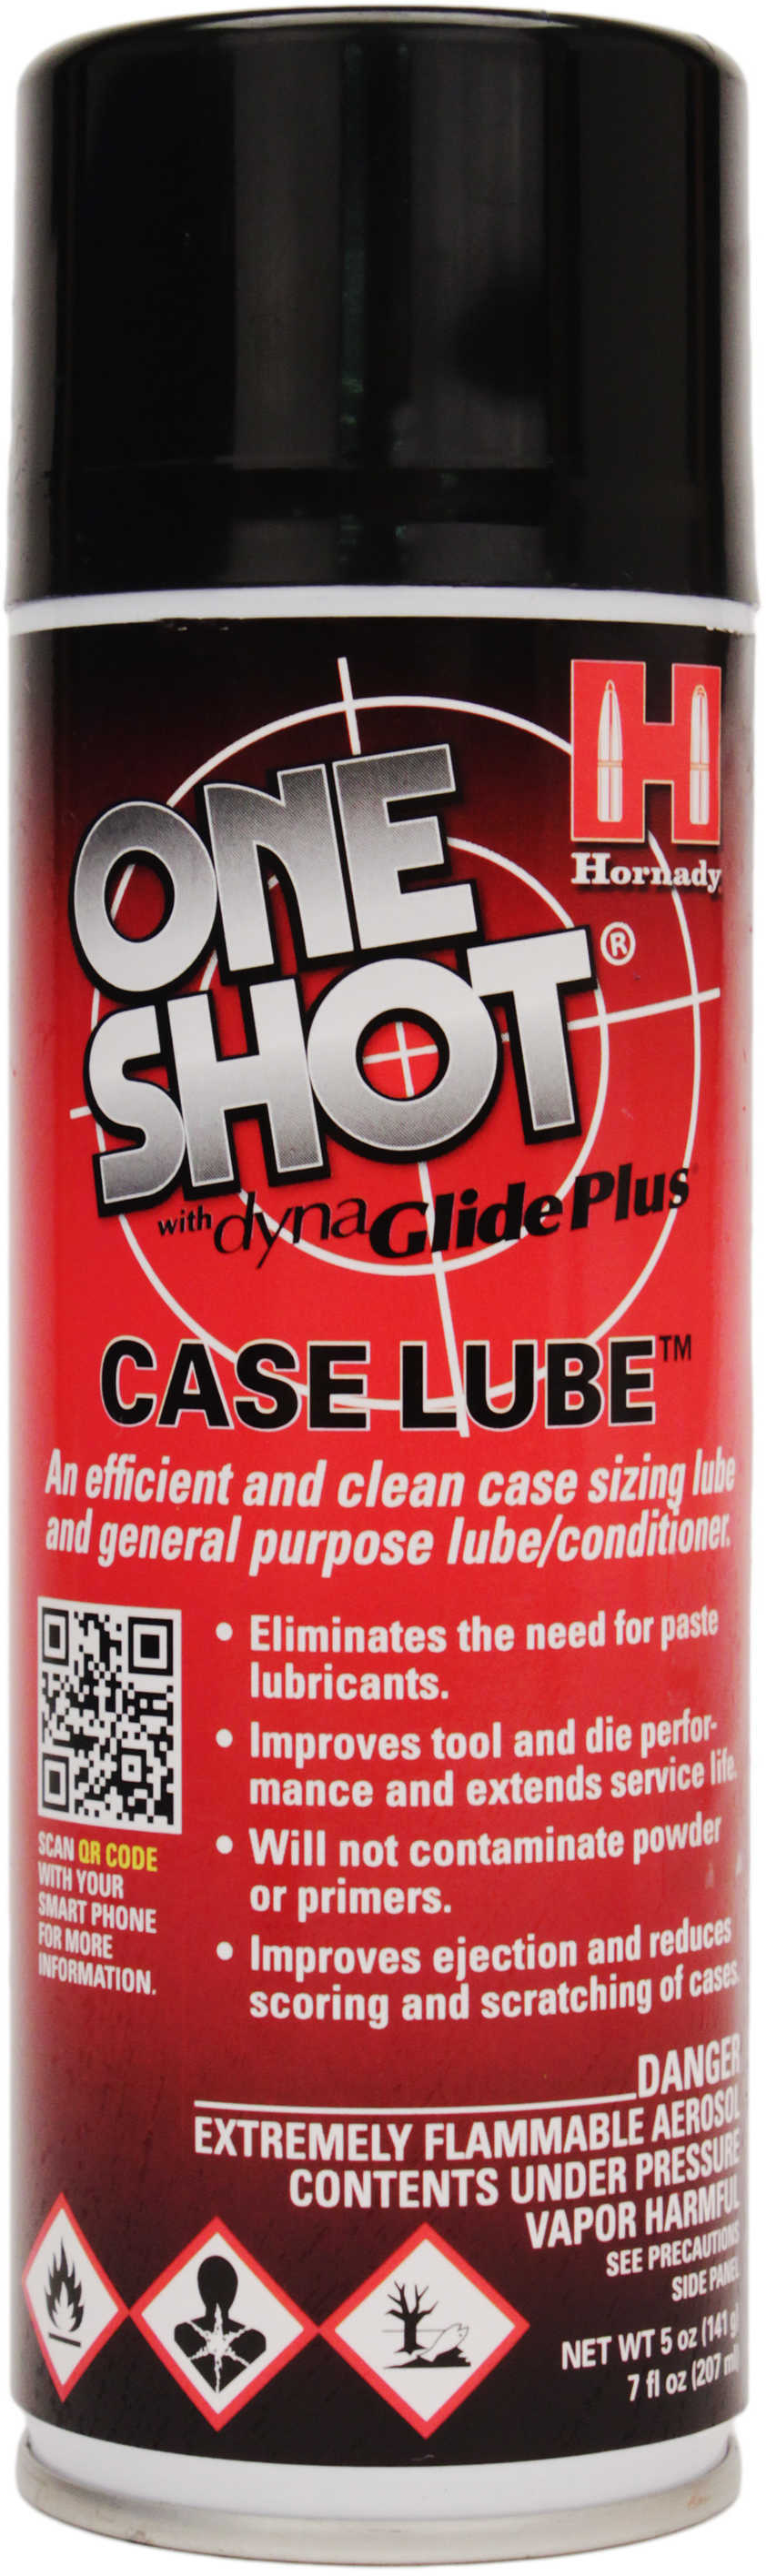 Hornady One Shot Spray Case Lube w/Dyna Glide Plus 5 Oz